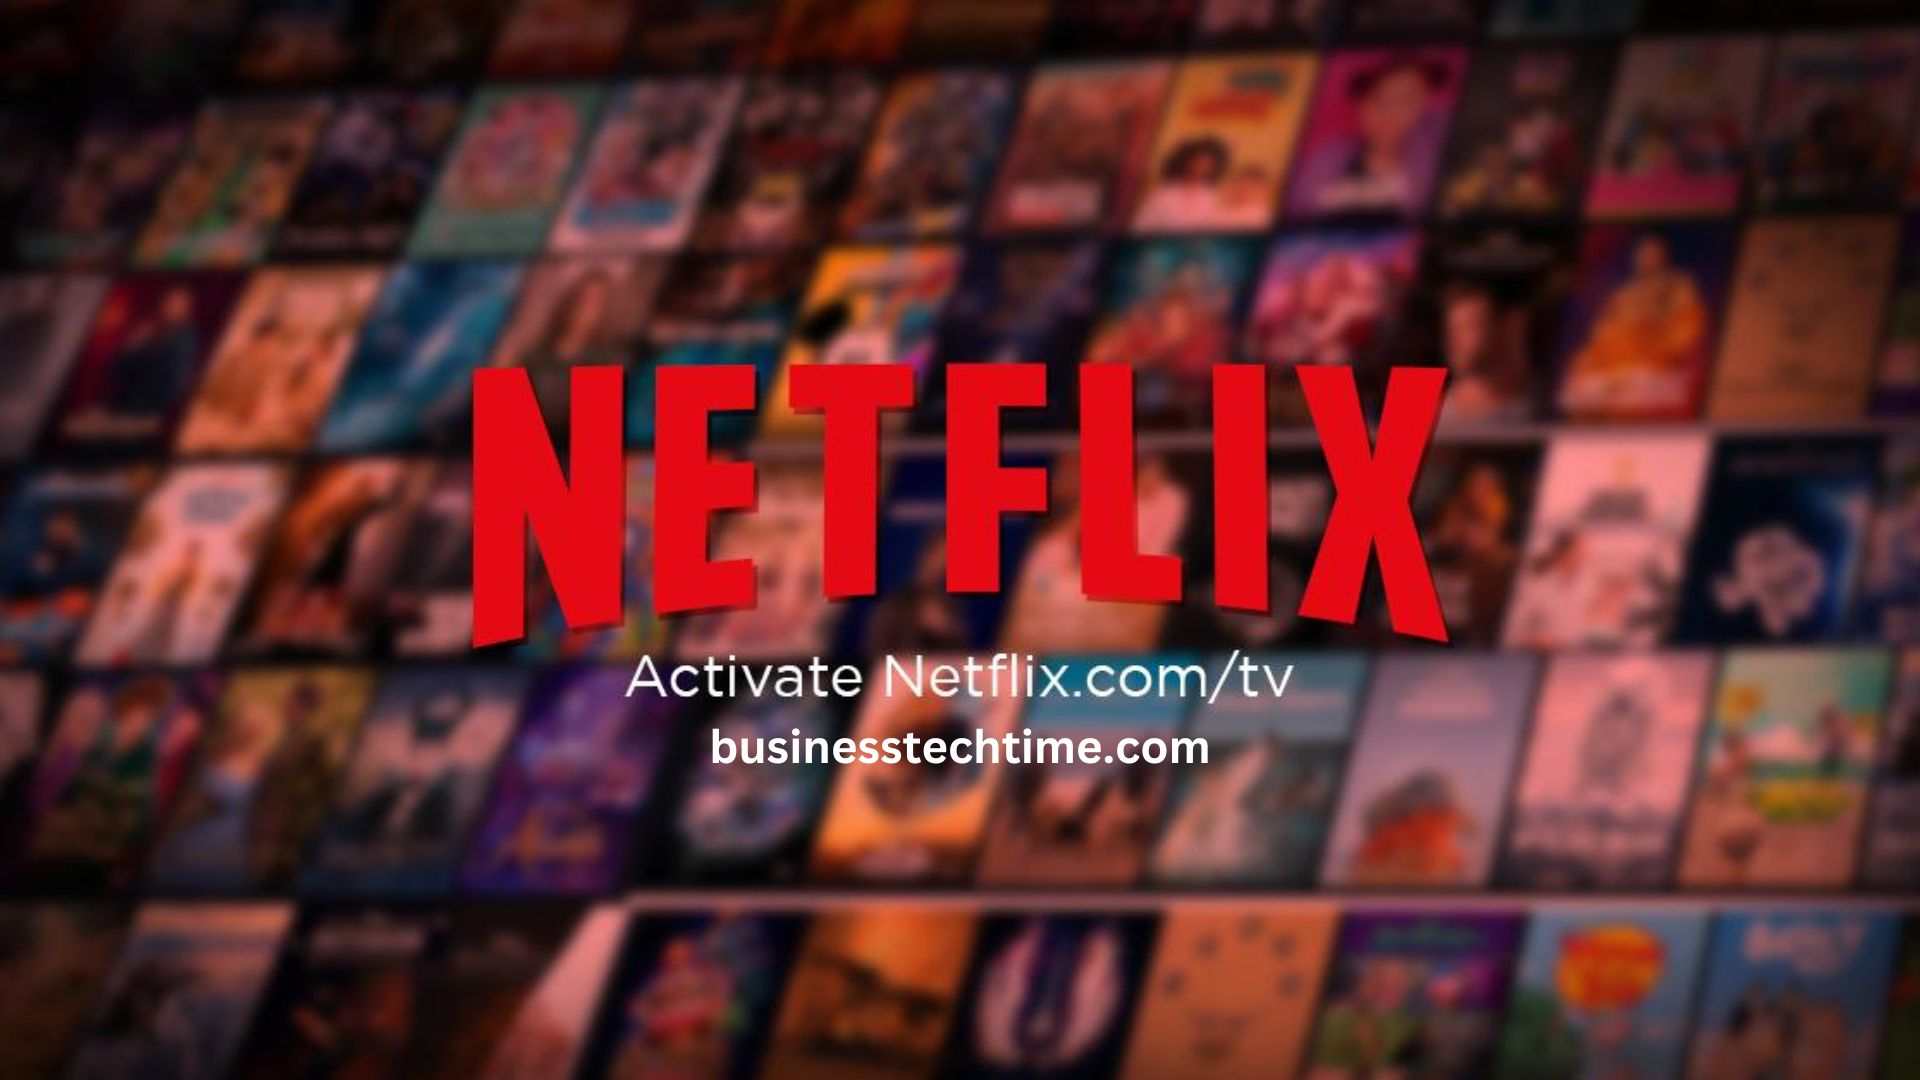 Netflix.com/tv8